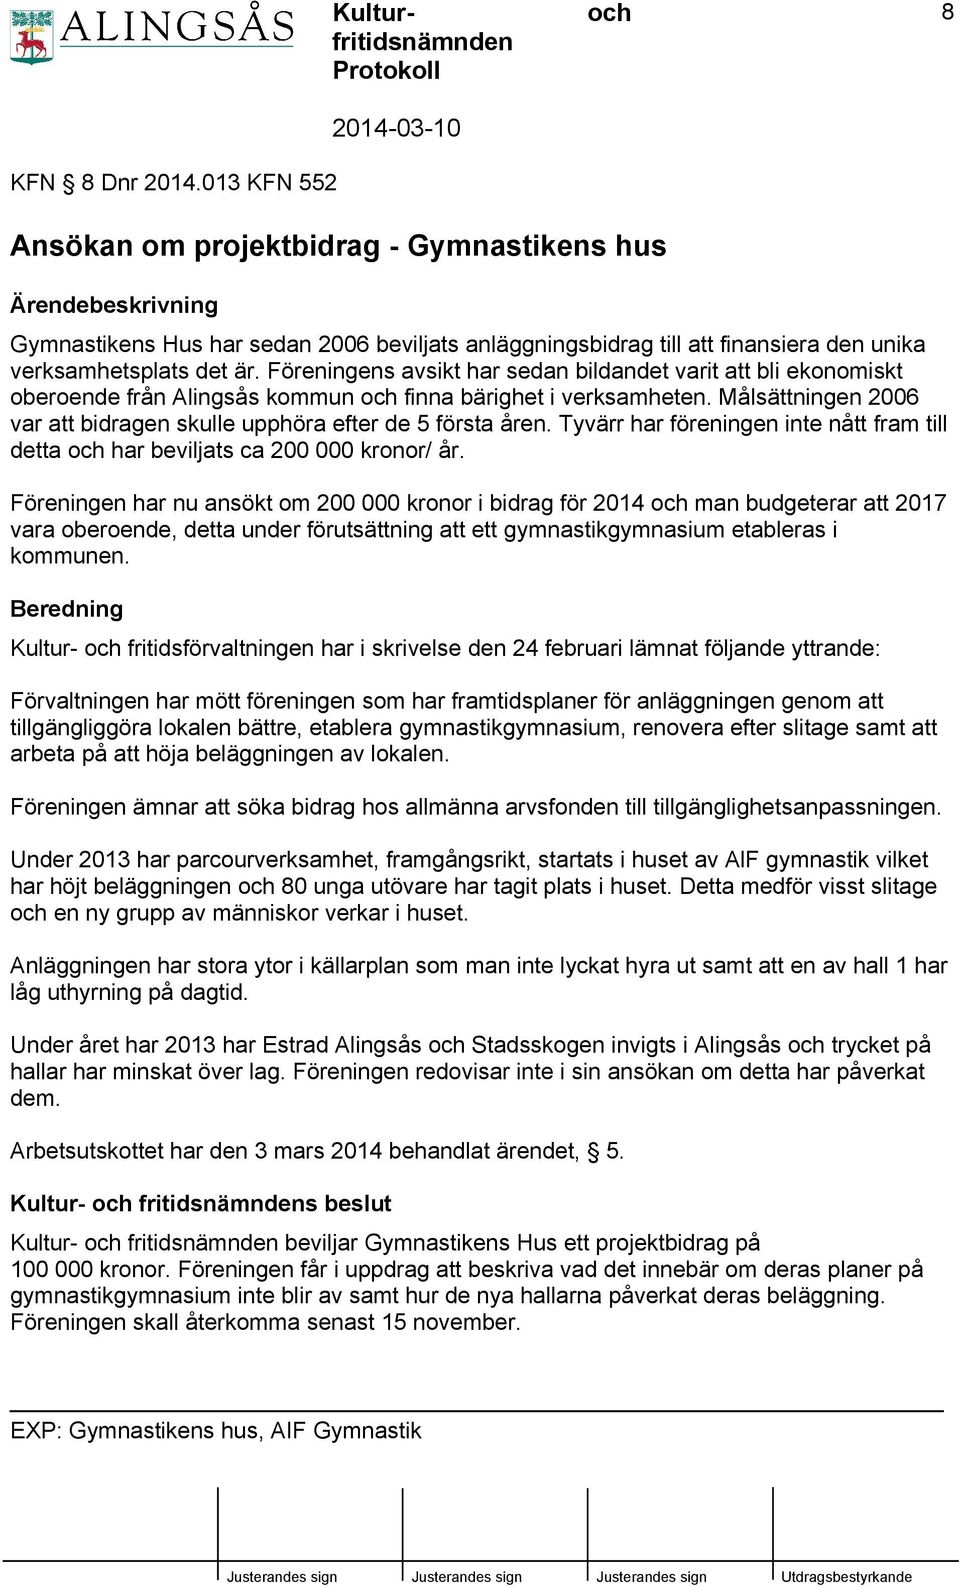 verksamhetsplats det är. Föreningens avsikt har sedan bildandet varit att bli ekonomiskt oberoende från Alingsås kommun finna bärighet i verksamheten.